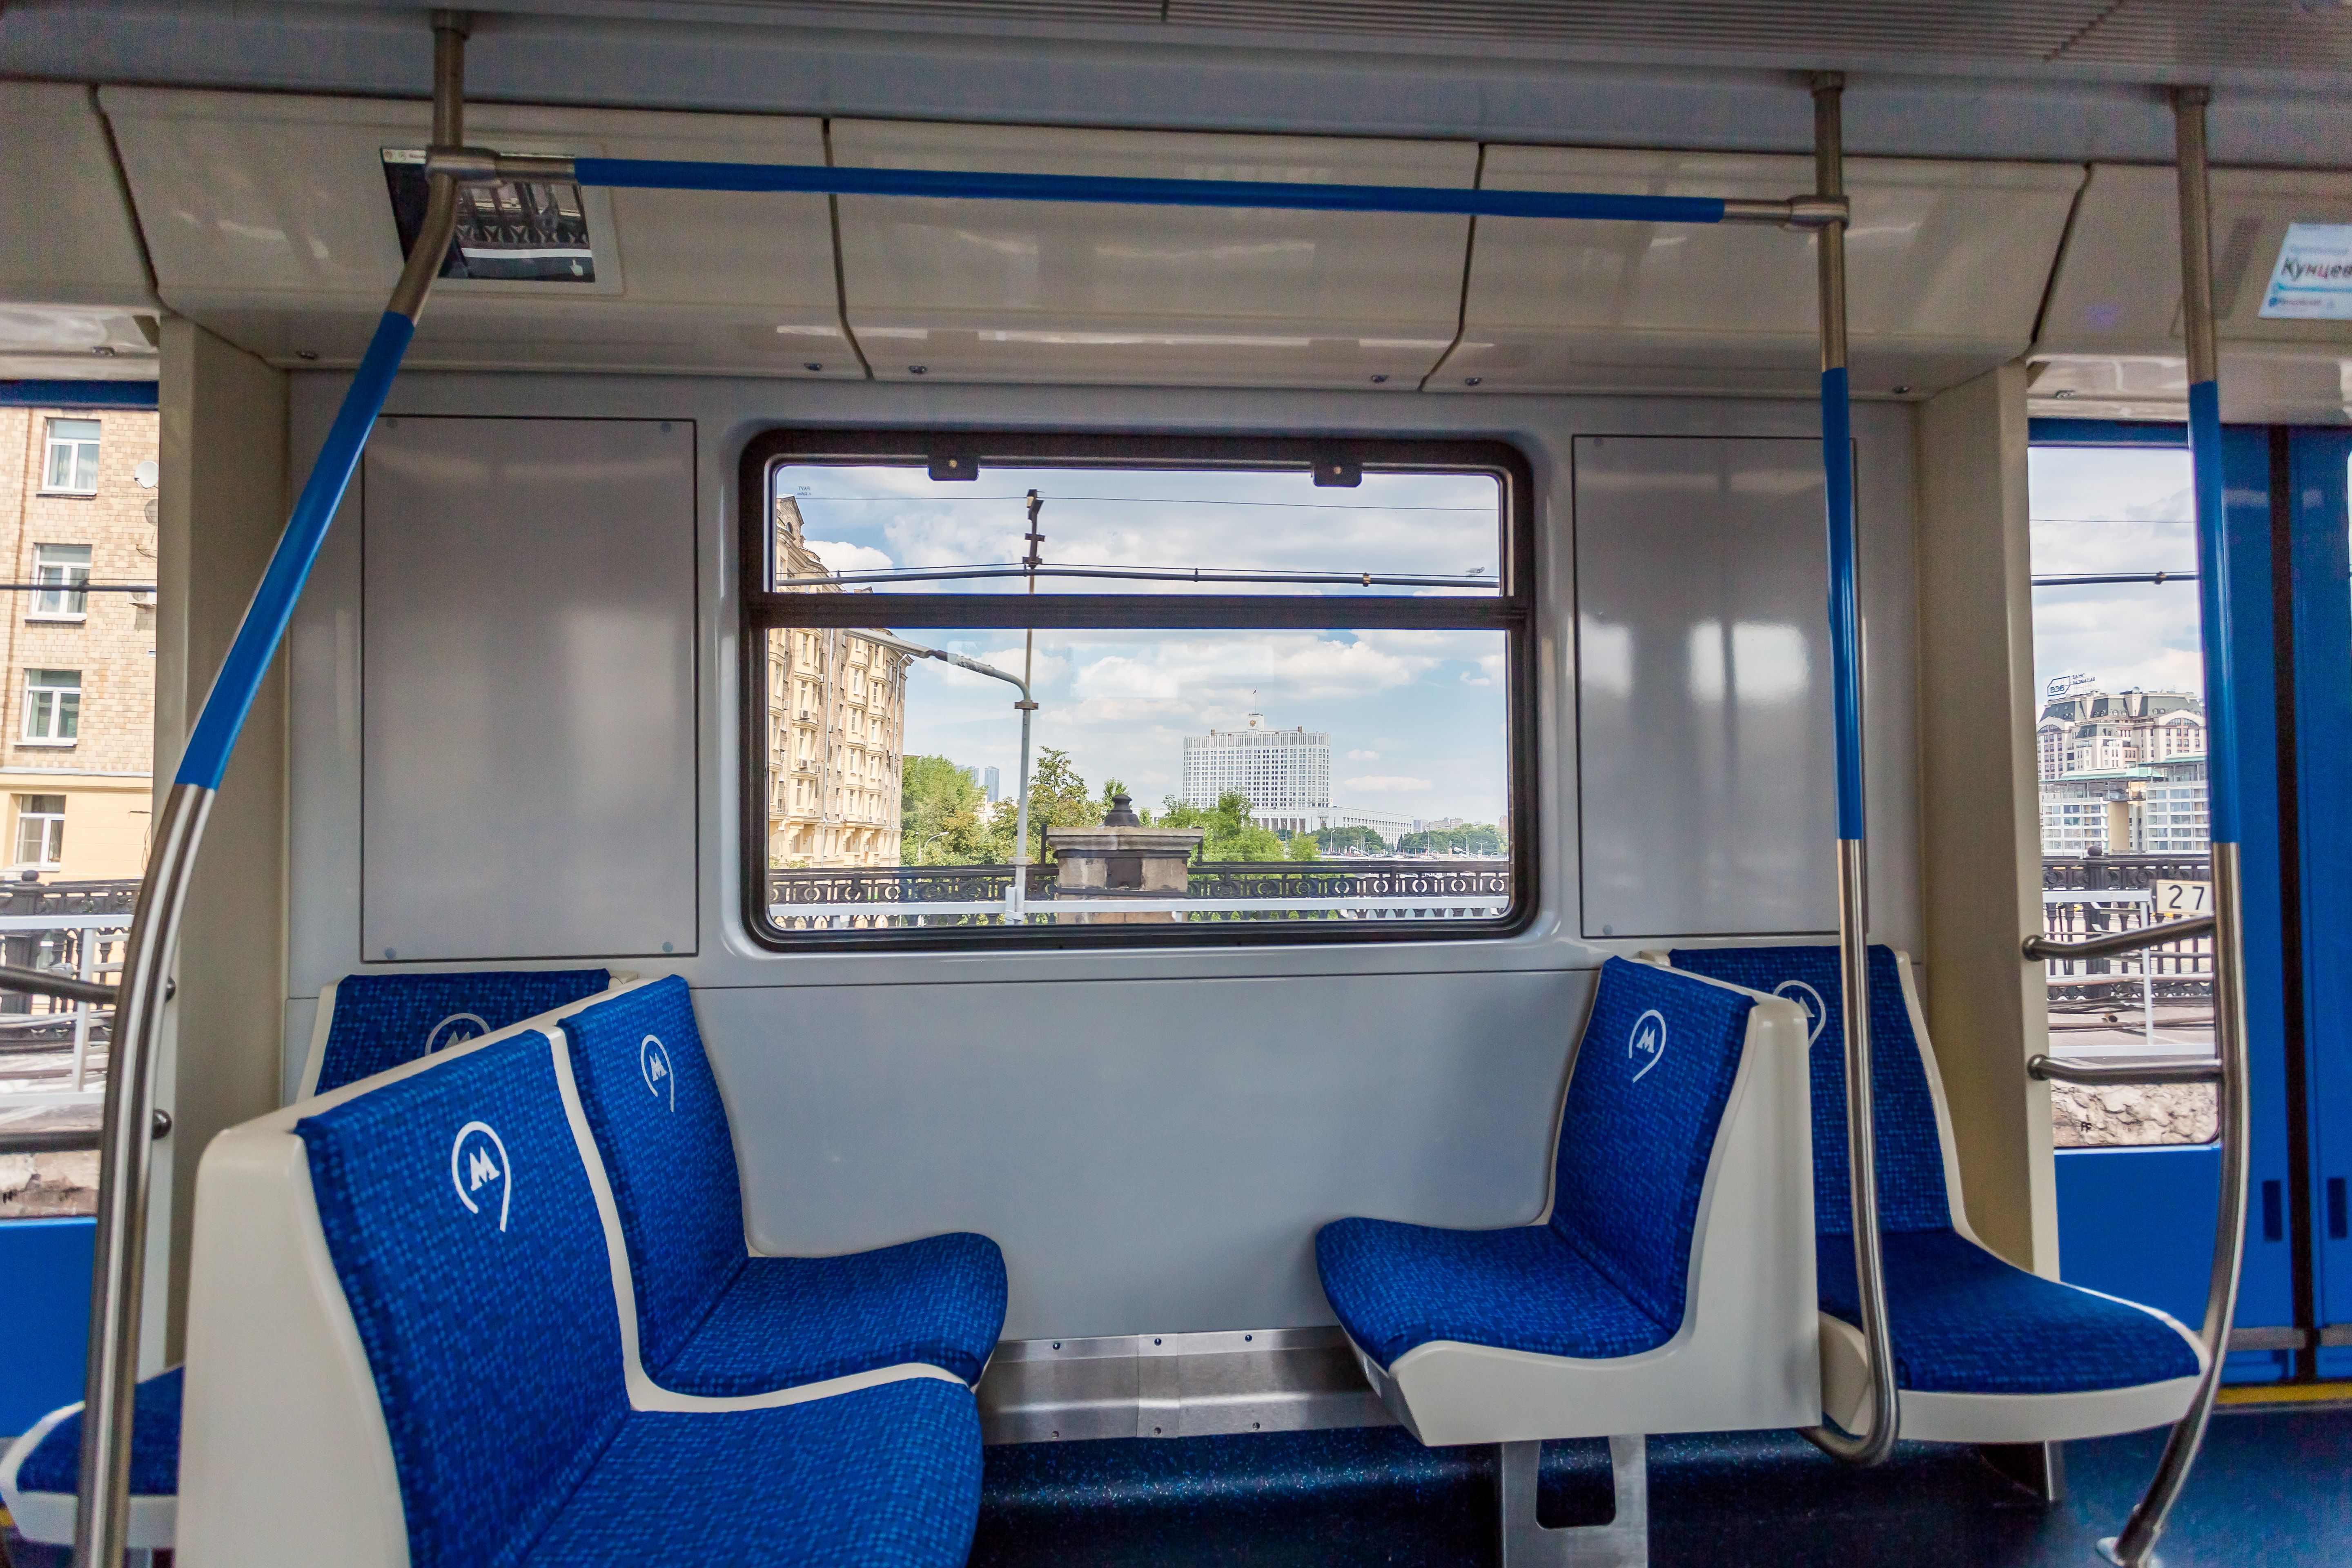 Расстановка кресел обеспечивает оконный обзор максимальному числу людей. Фото: пресс-служба Московского метро